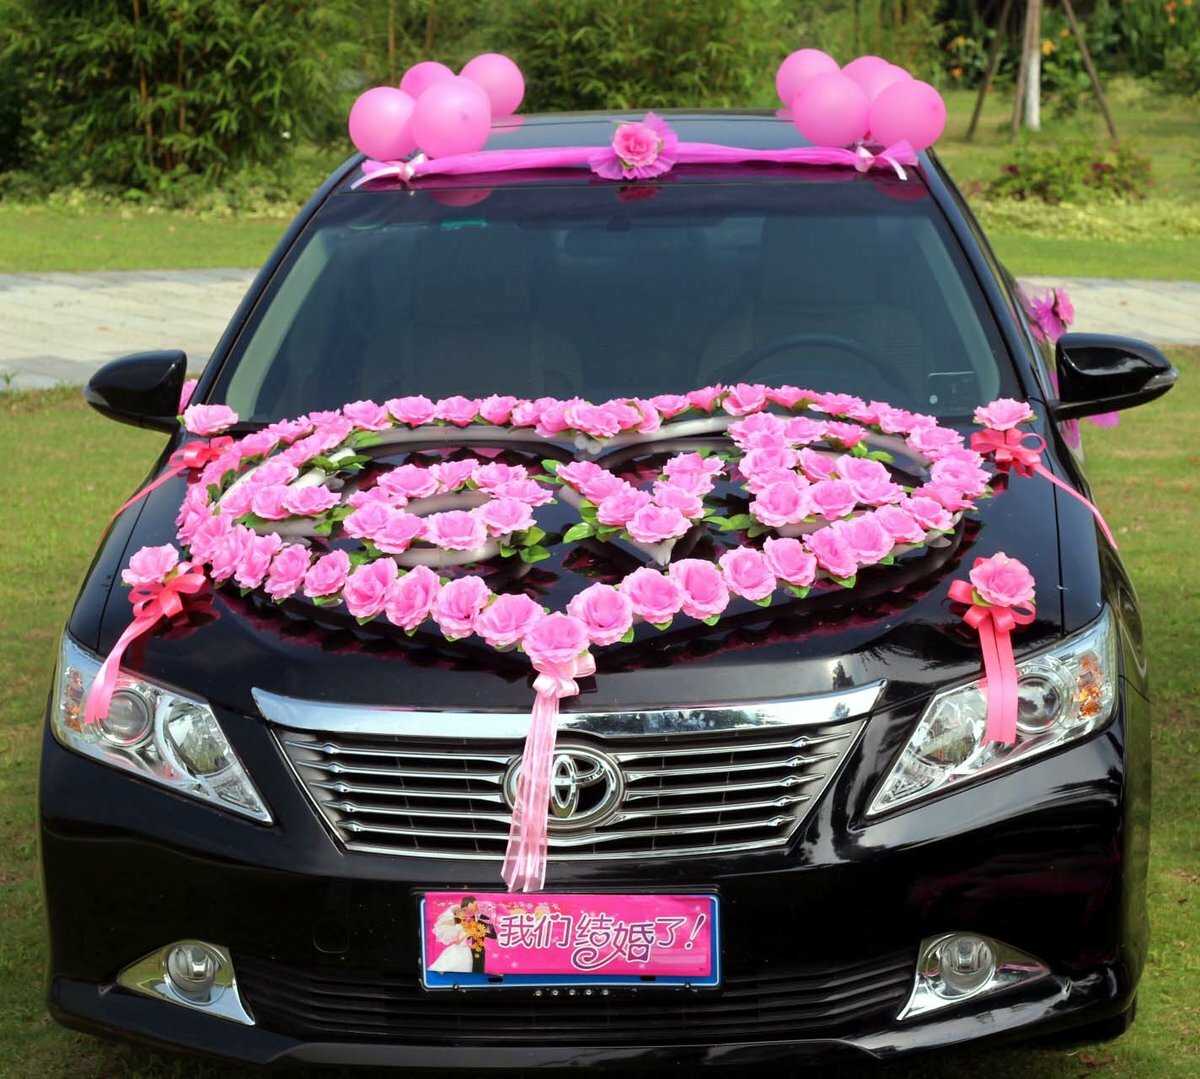 Как украсить машины на свадьбу - цветами лентами шарами и куклами фото